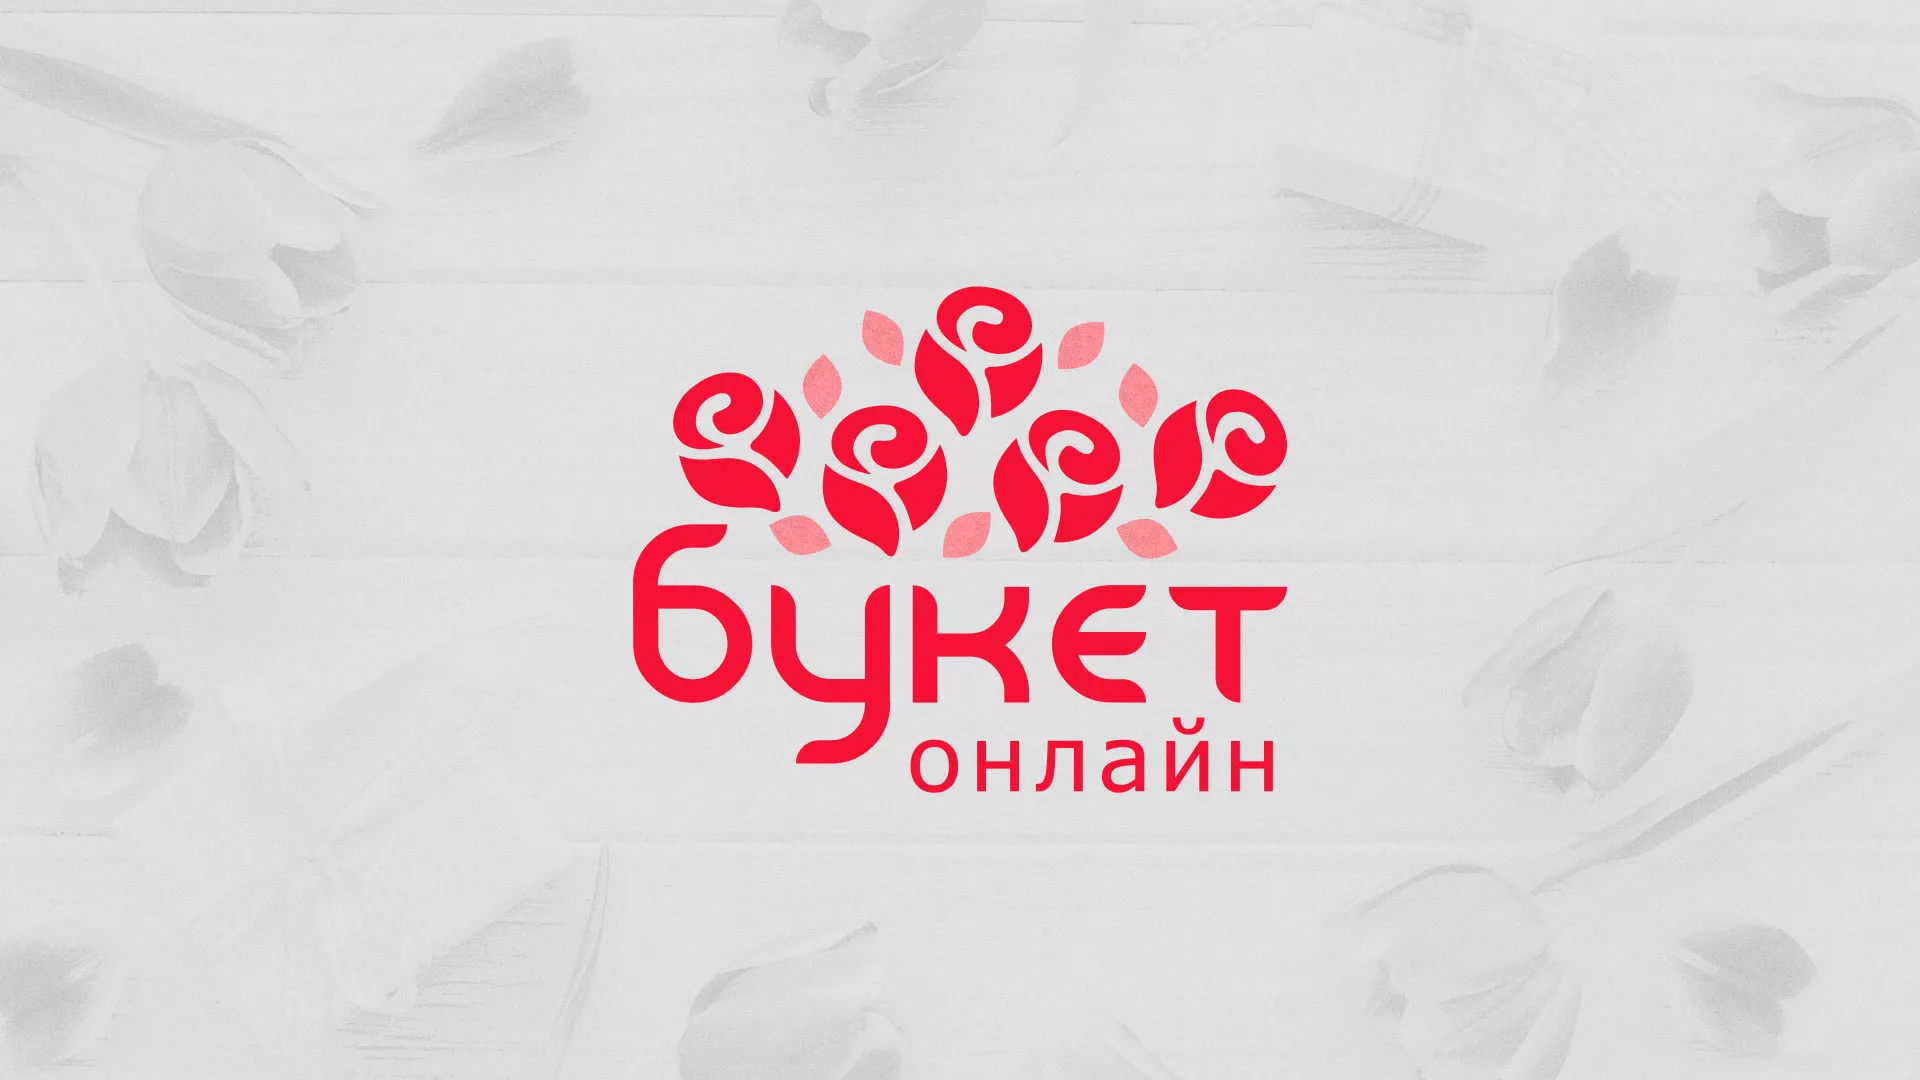 Создание интернет-магазина «Букет-онлайн» по цветам в Железногорске